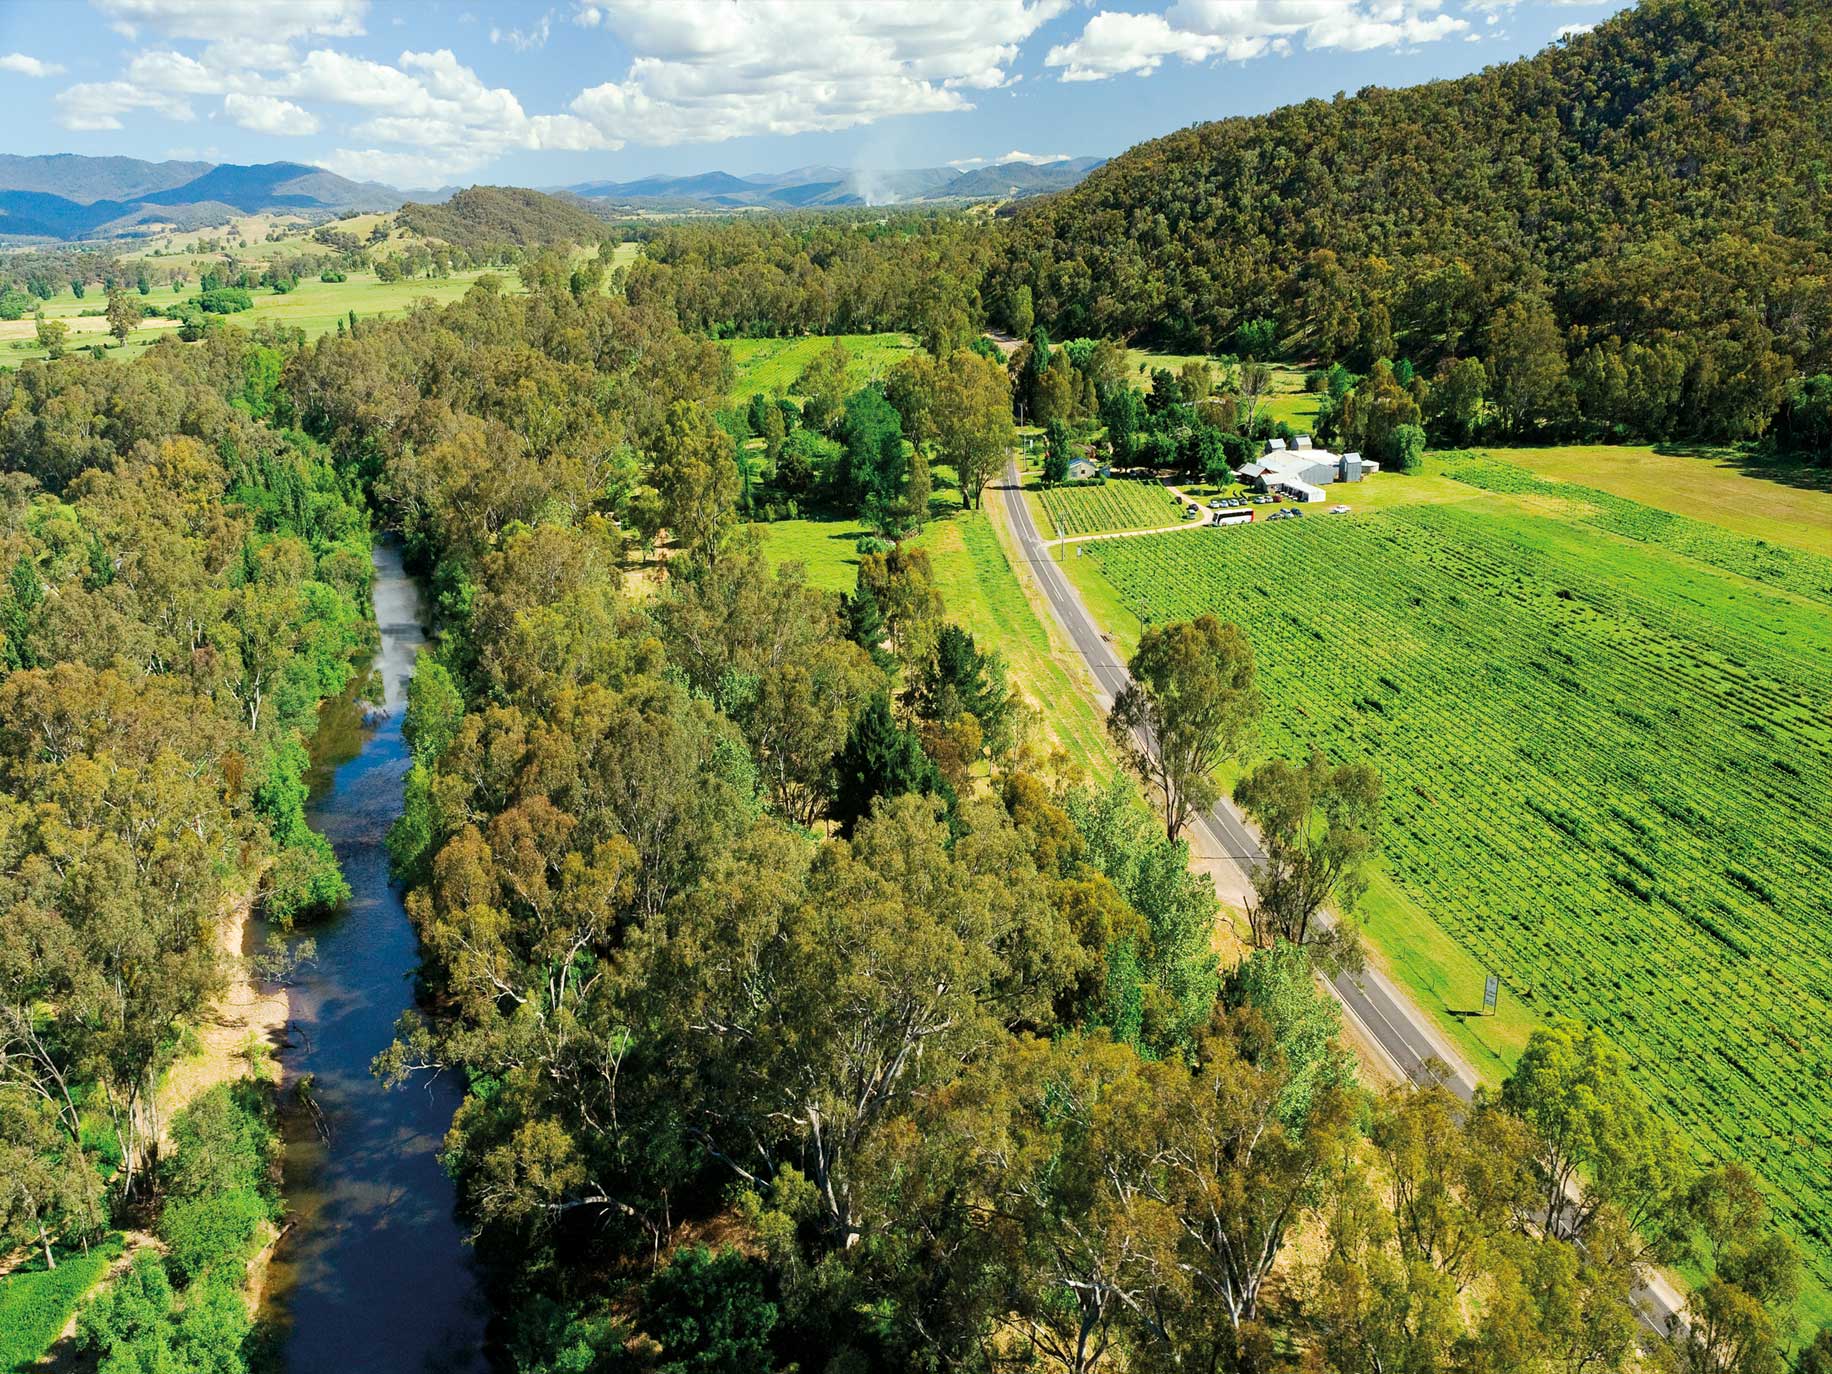 Trevor Knagg's former King River Estate Winery was established as Biodynamic